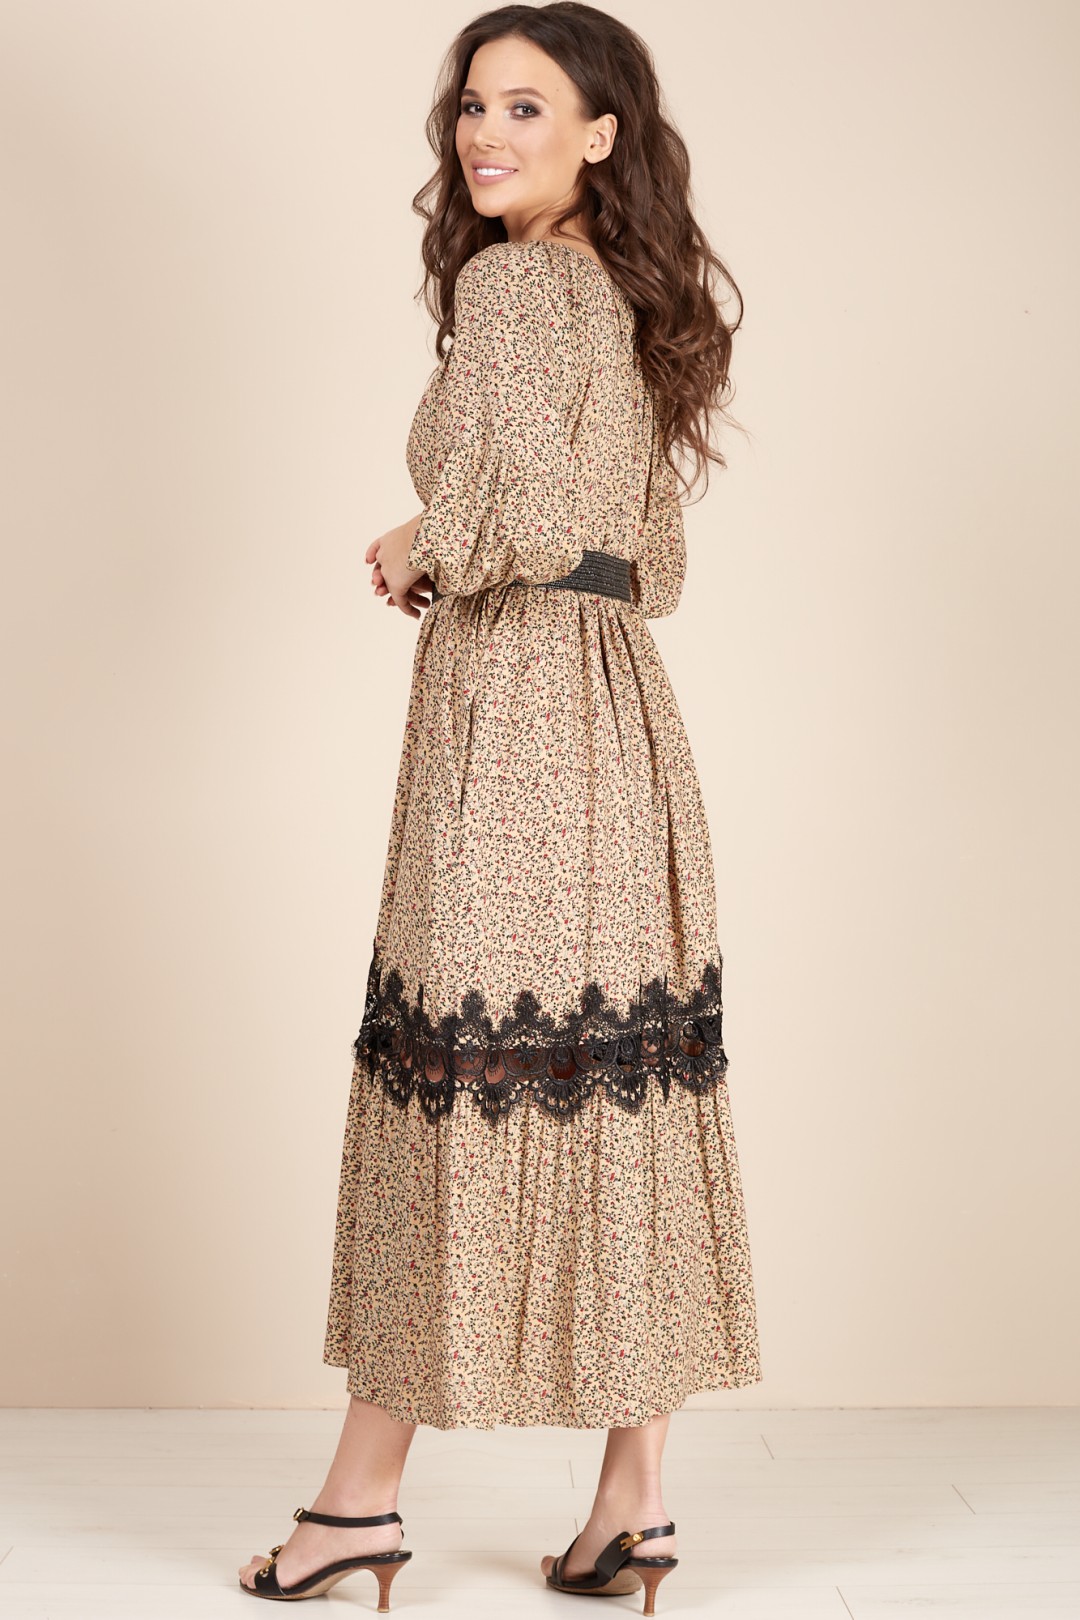 Платье ТЭФФИ-стиль 1489 бежевый